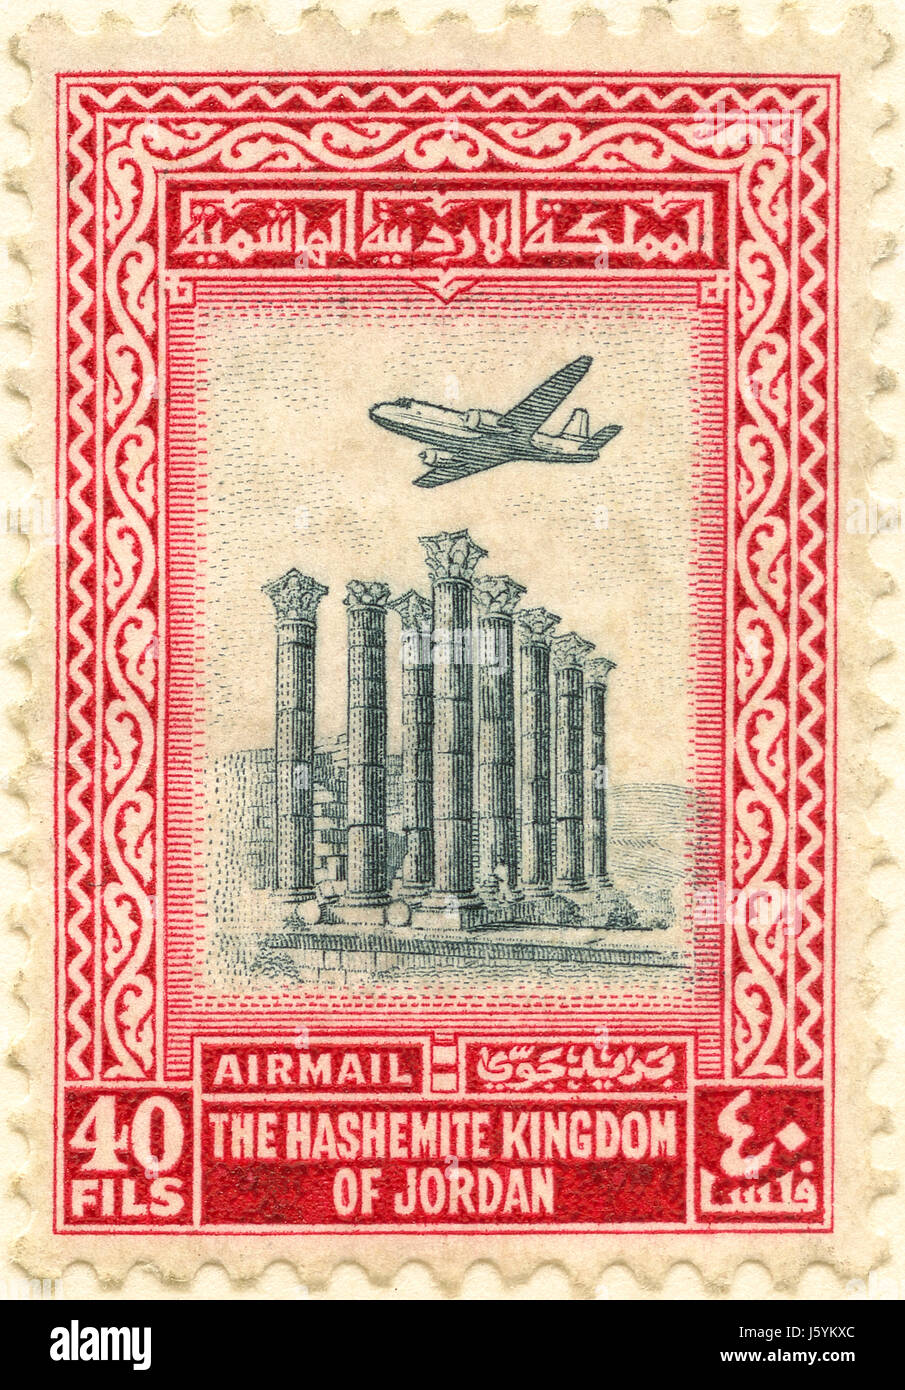 Timbre poste aérienne, Royaume hachémite de Jordanie, 1958 Banque D'Images